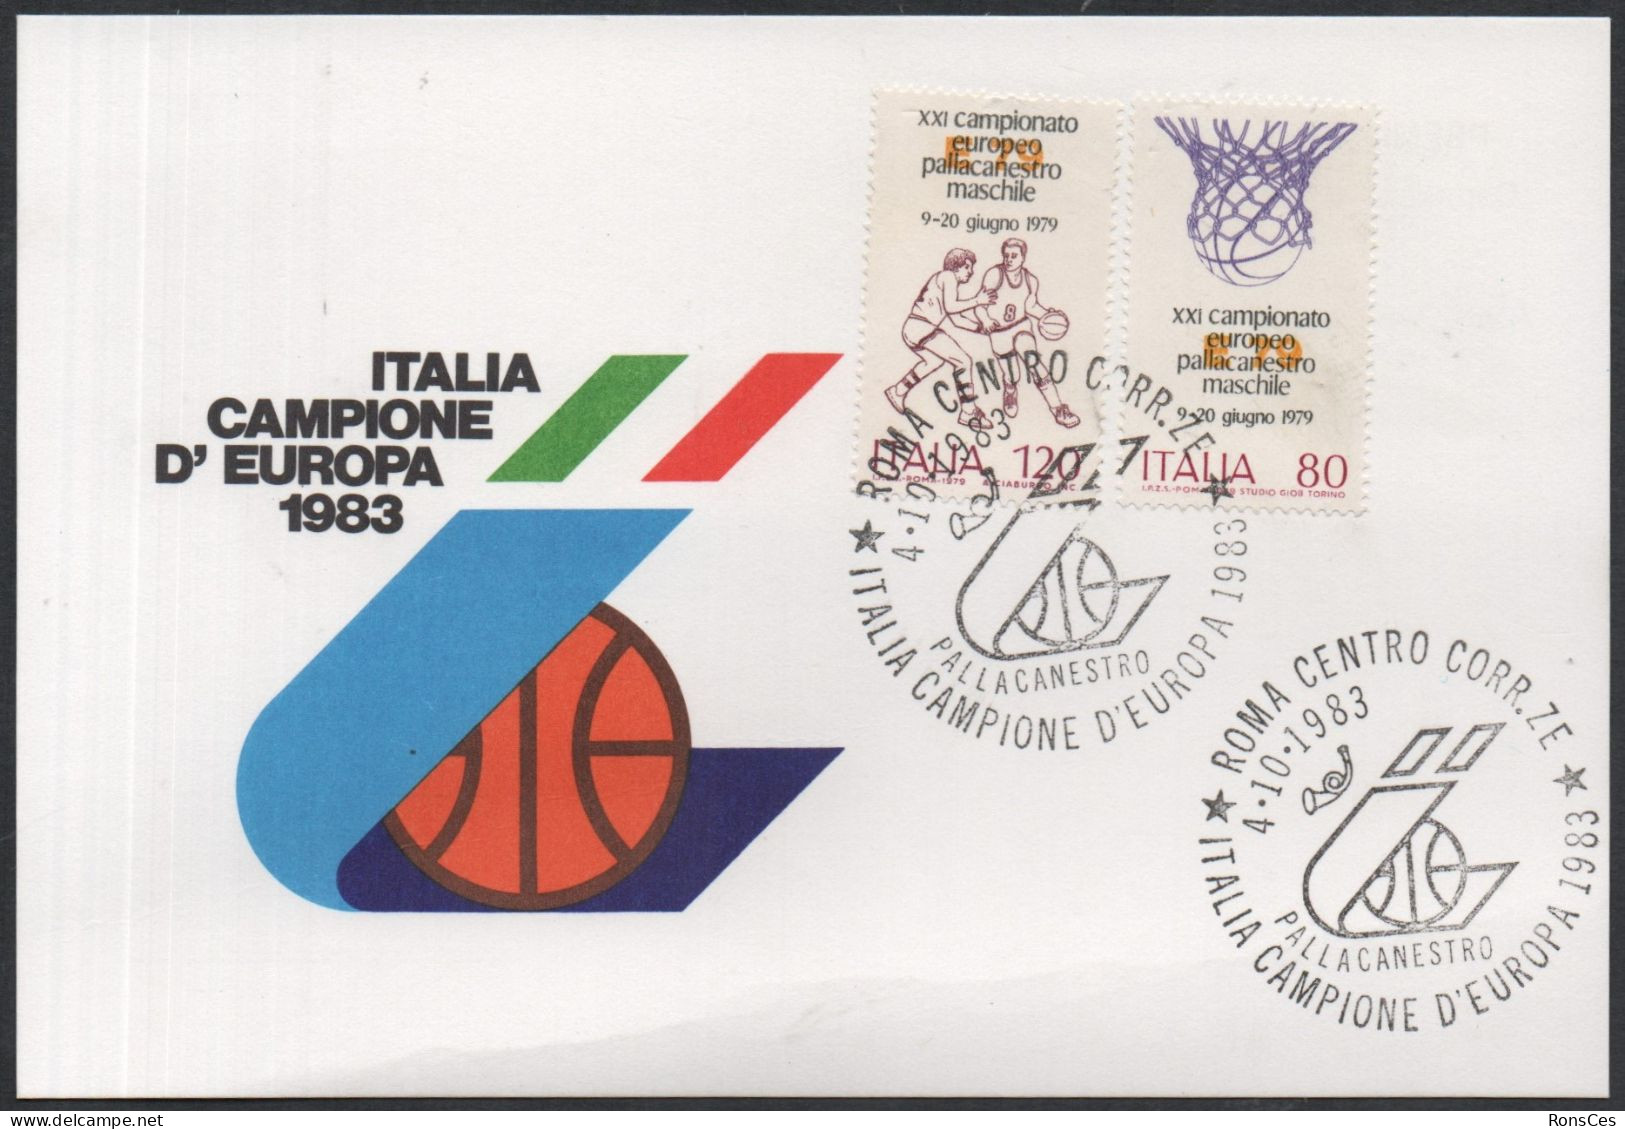 BASKETBALL - ITALIA ROMA 1983 - ITALIA CAMPIONE D'EUROPA PALLACAMESTRO - CARTOLINA UFFICIALE - A - Baloncesto